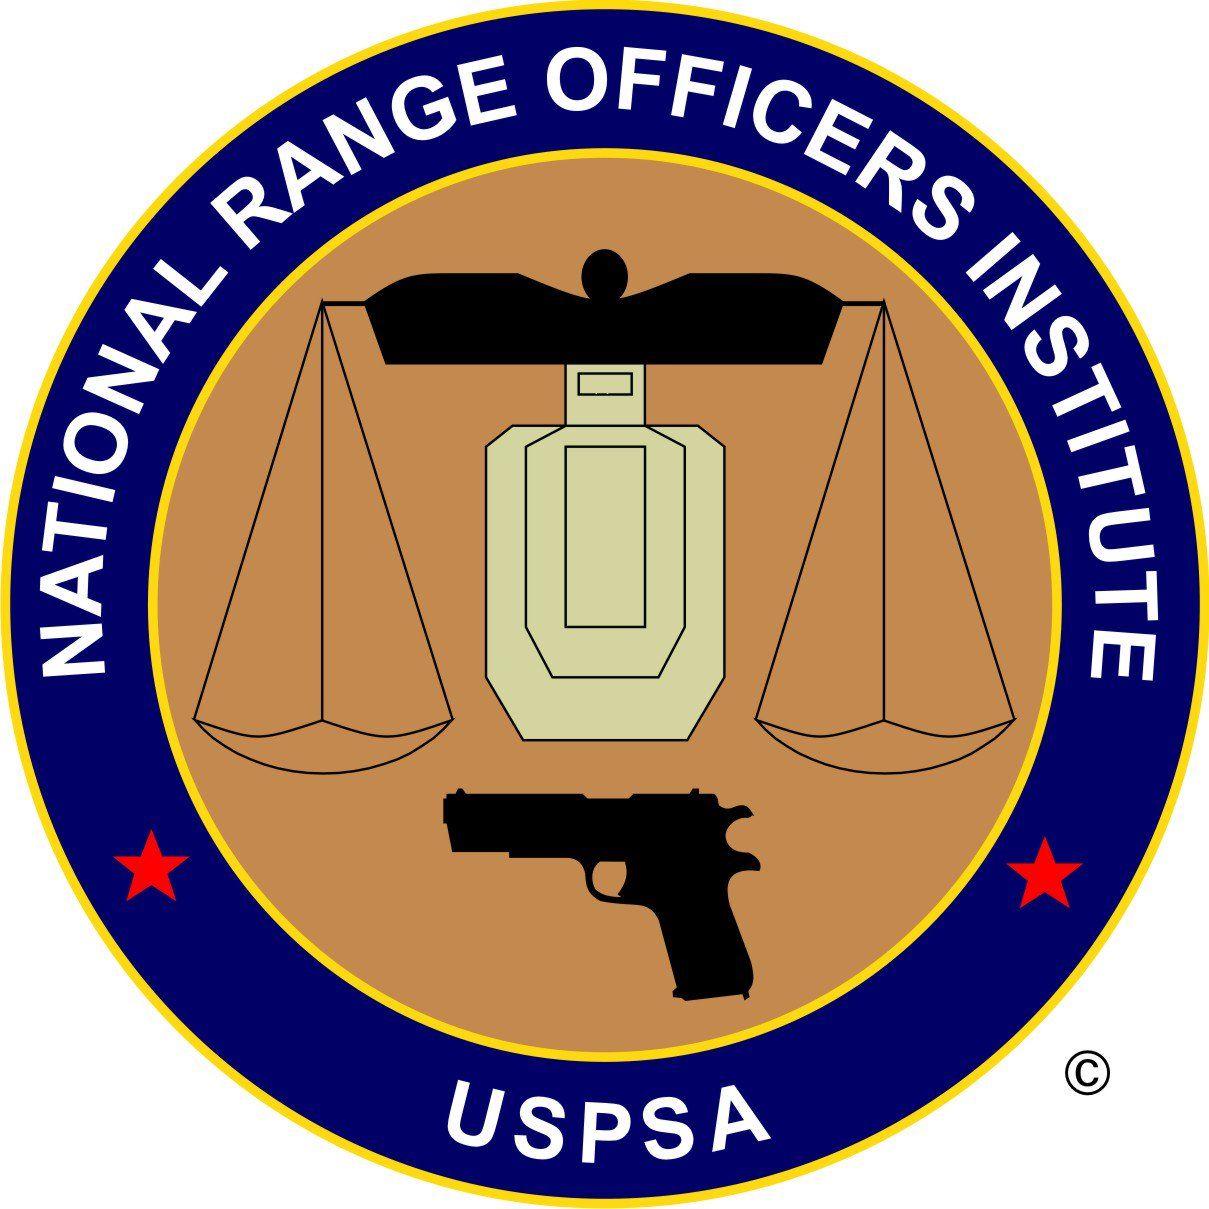 Shooting Logo - USPSA Logo Usage - United States Practical Shooting Association